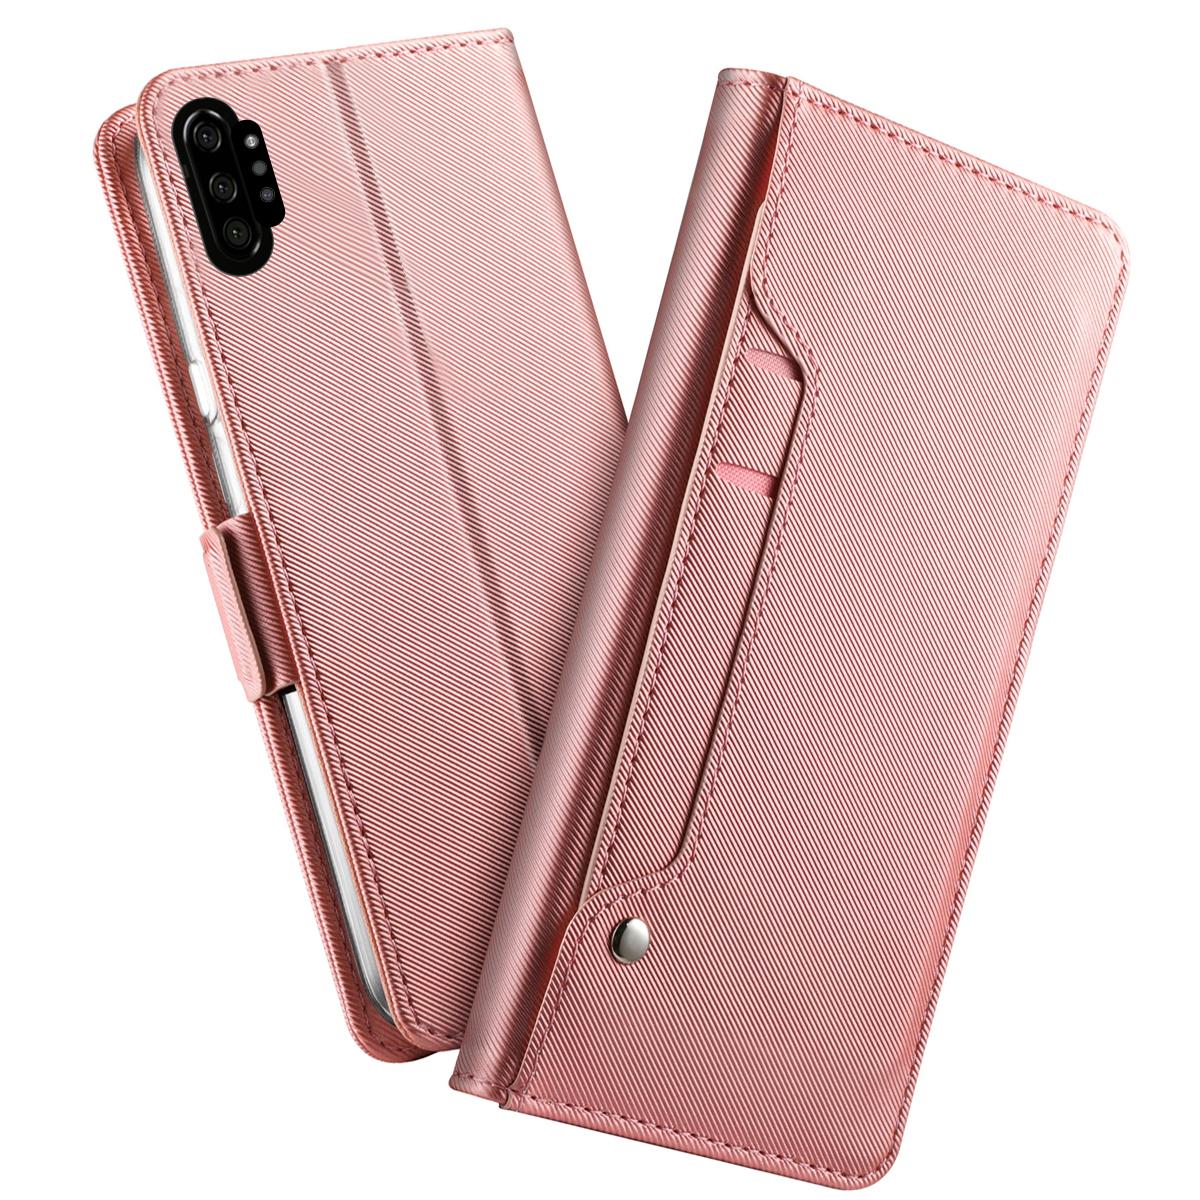 Samsung Galaxy Note 10 Plus Wallet Case Mirror Pink Gold